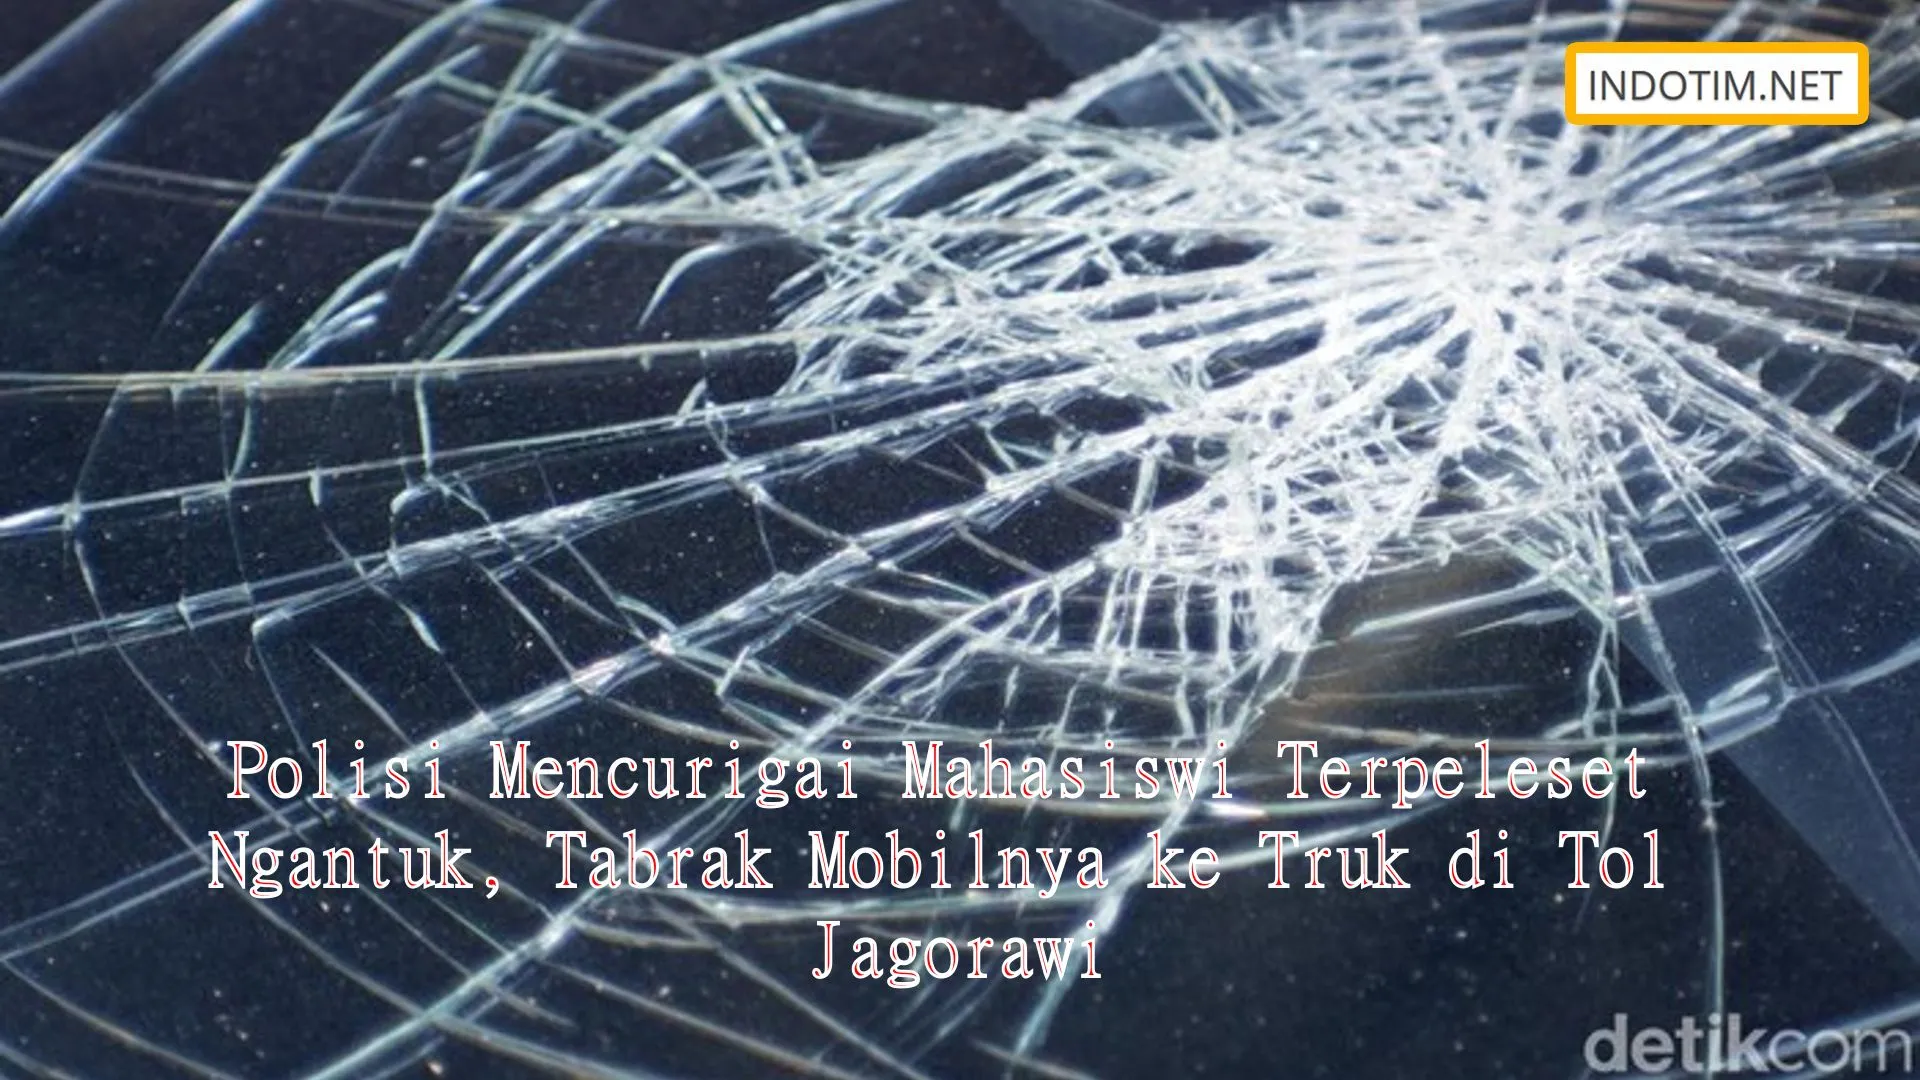 Polisi Mencurigai Mahasiswi Terpeleset Ngantuk, Tabrak Mobilnya ke Truk di Tol Jagorawi